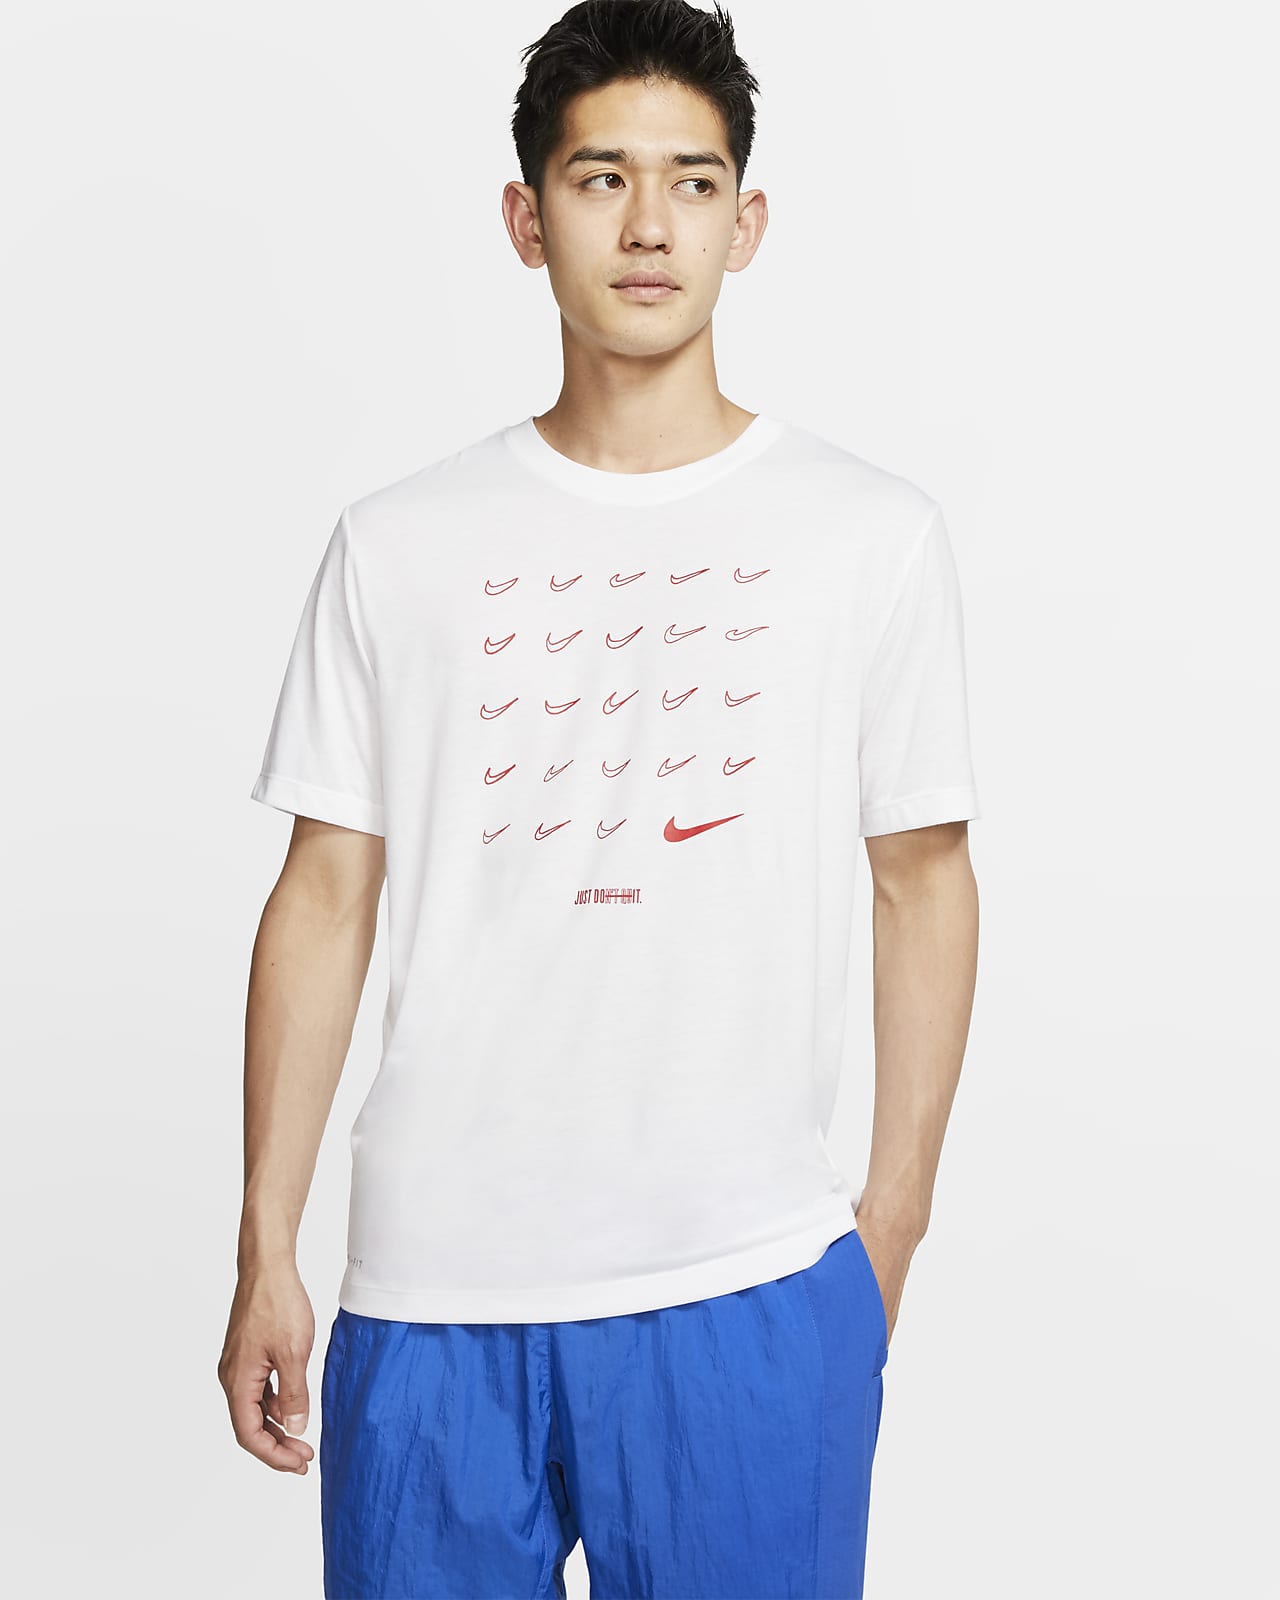 Nike Dri-FIT 男子训练T恤